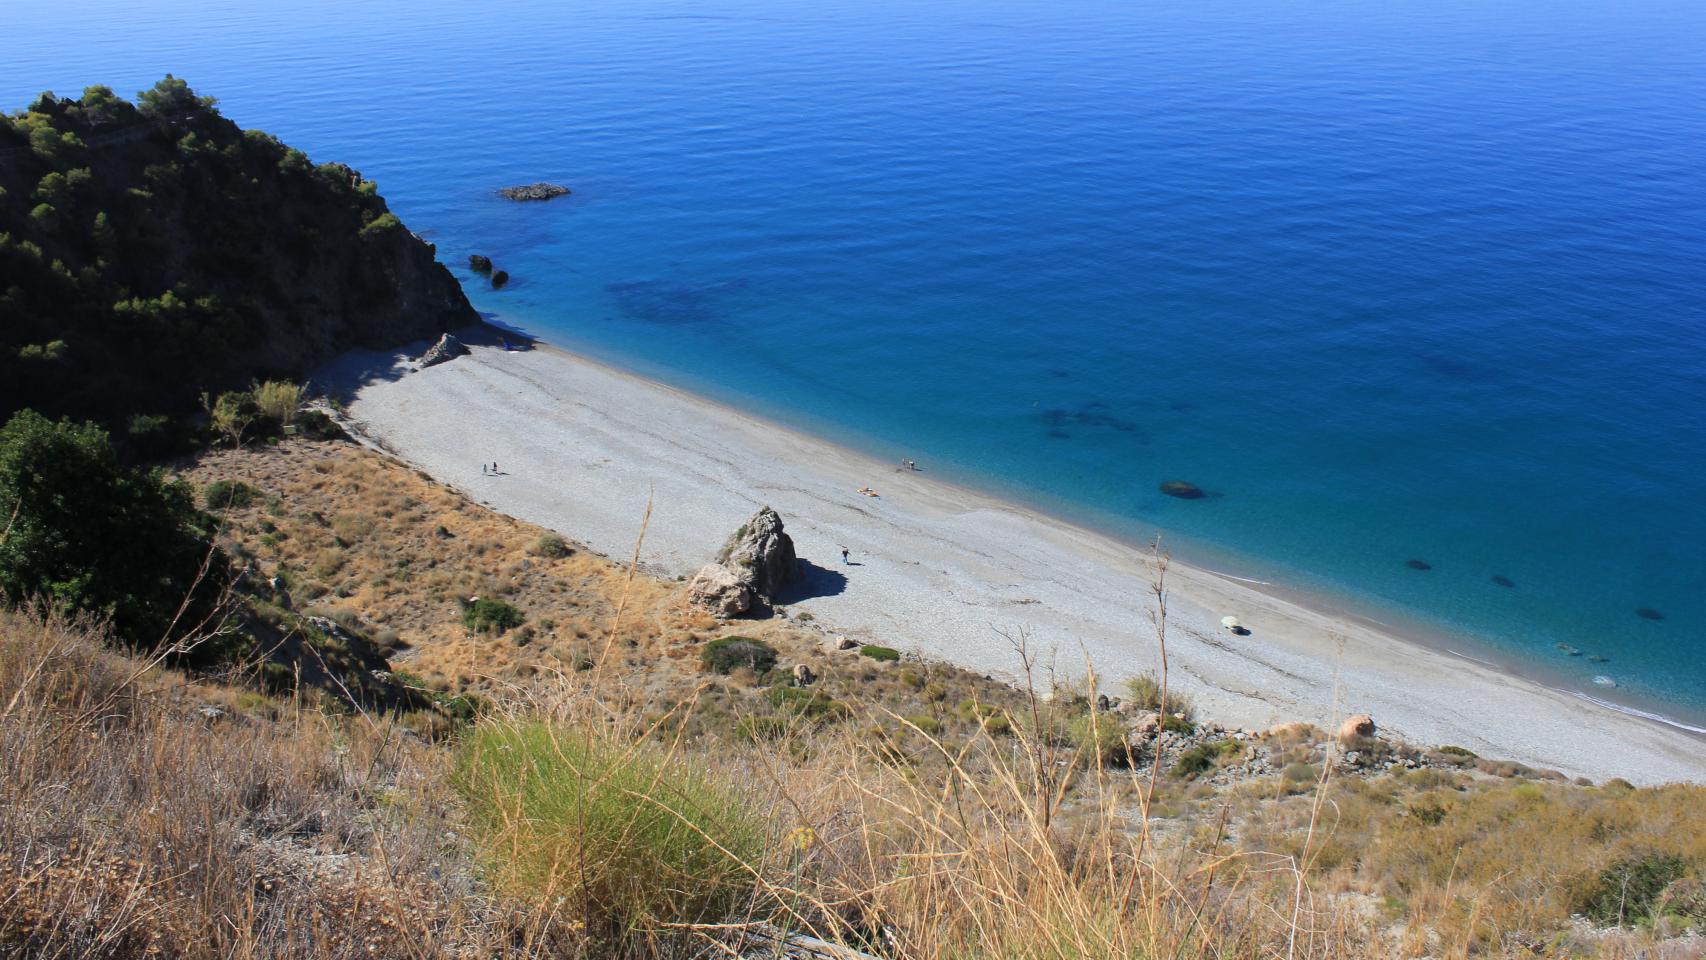 Las playas nudistas suelen ser las calas más tranquilas de las localidades costeras malagueñas.